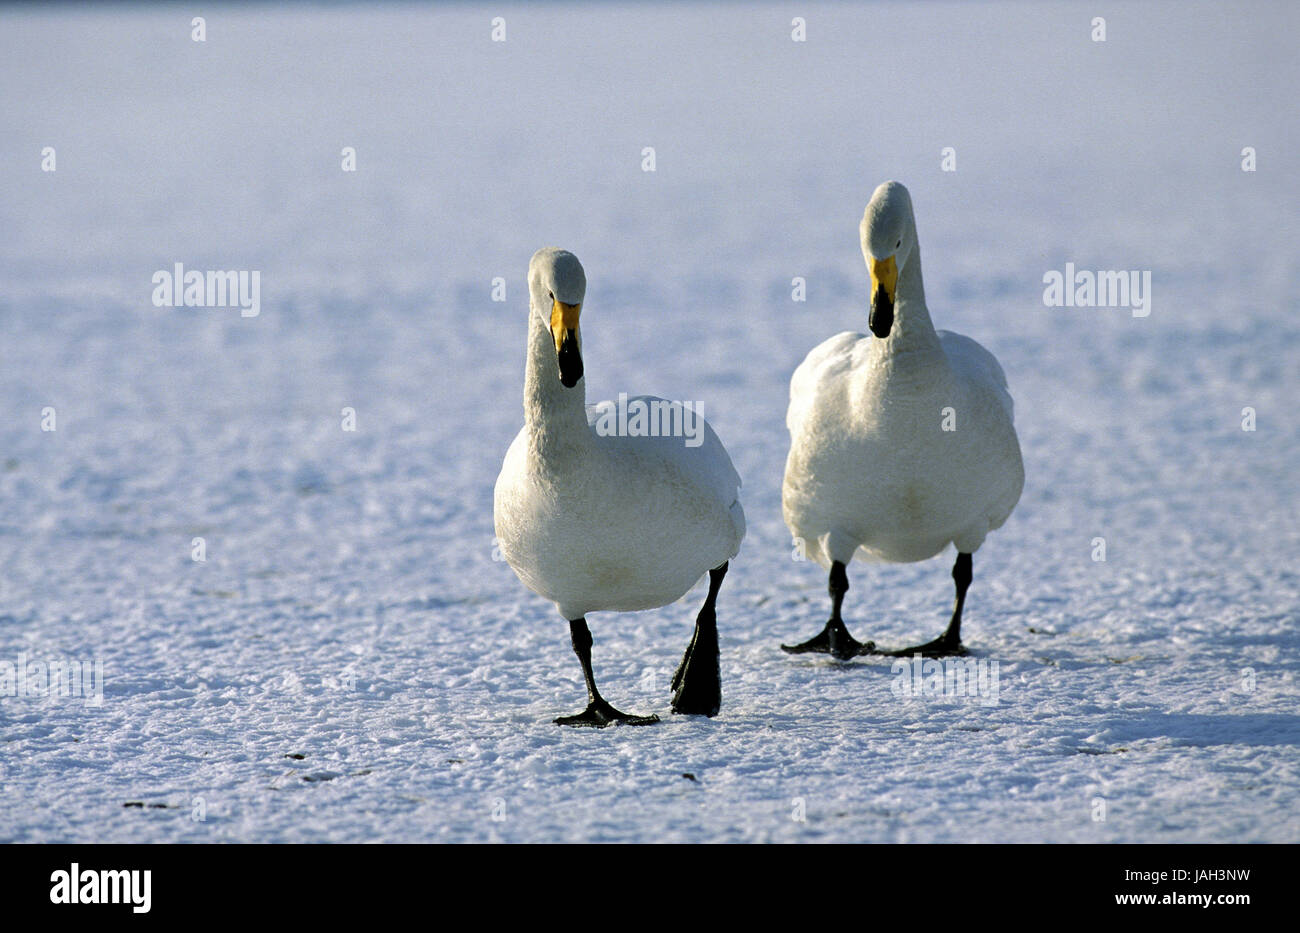 Chanson,swan Cygnus cygnus,couple,courir,a gelé,lac, Hokkaido, Japon, Islande Banque D'Images